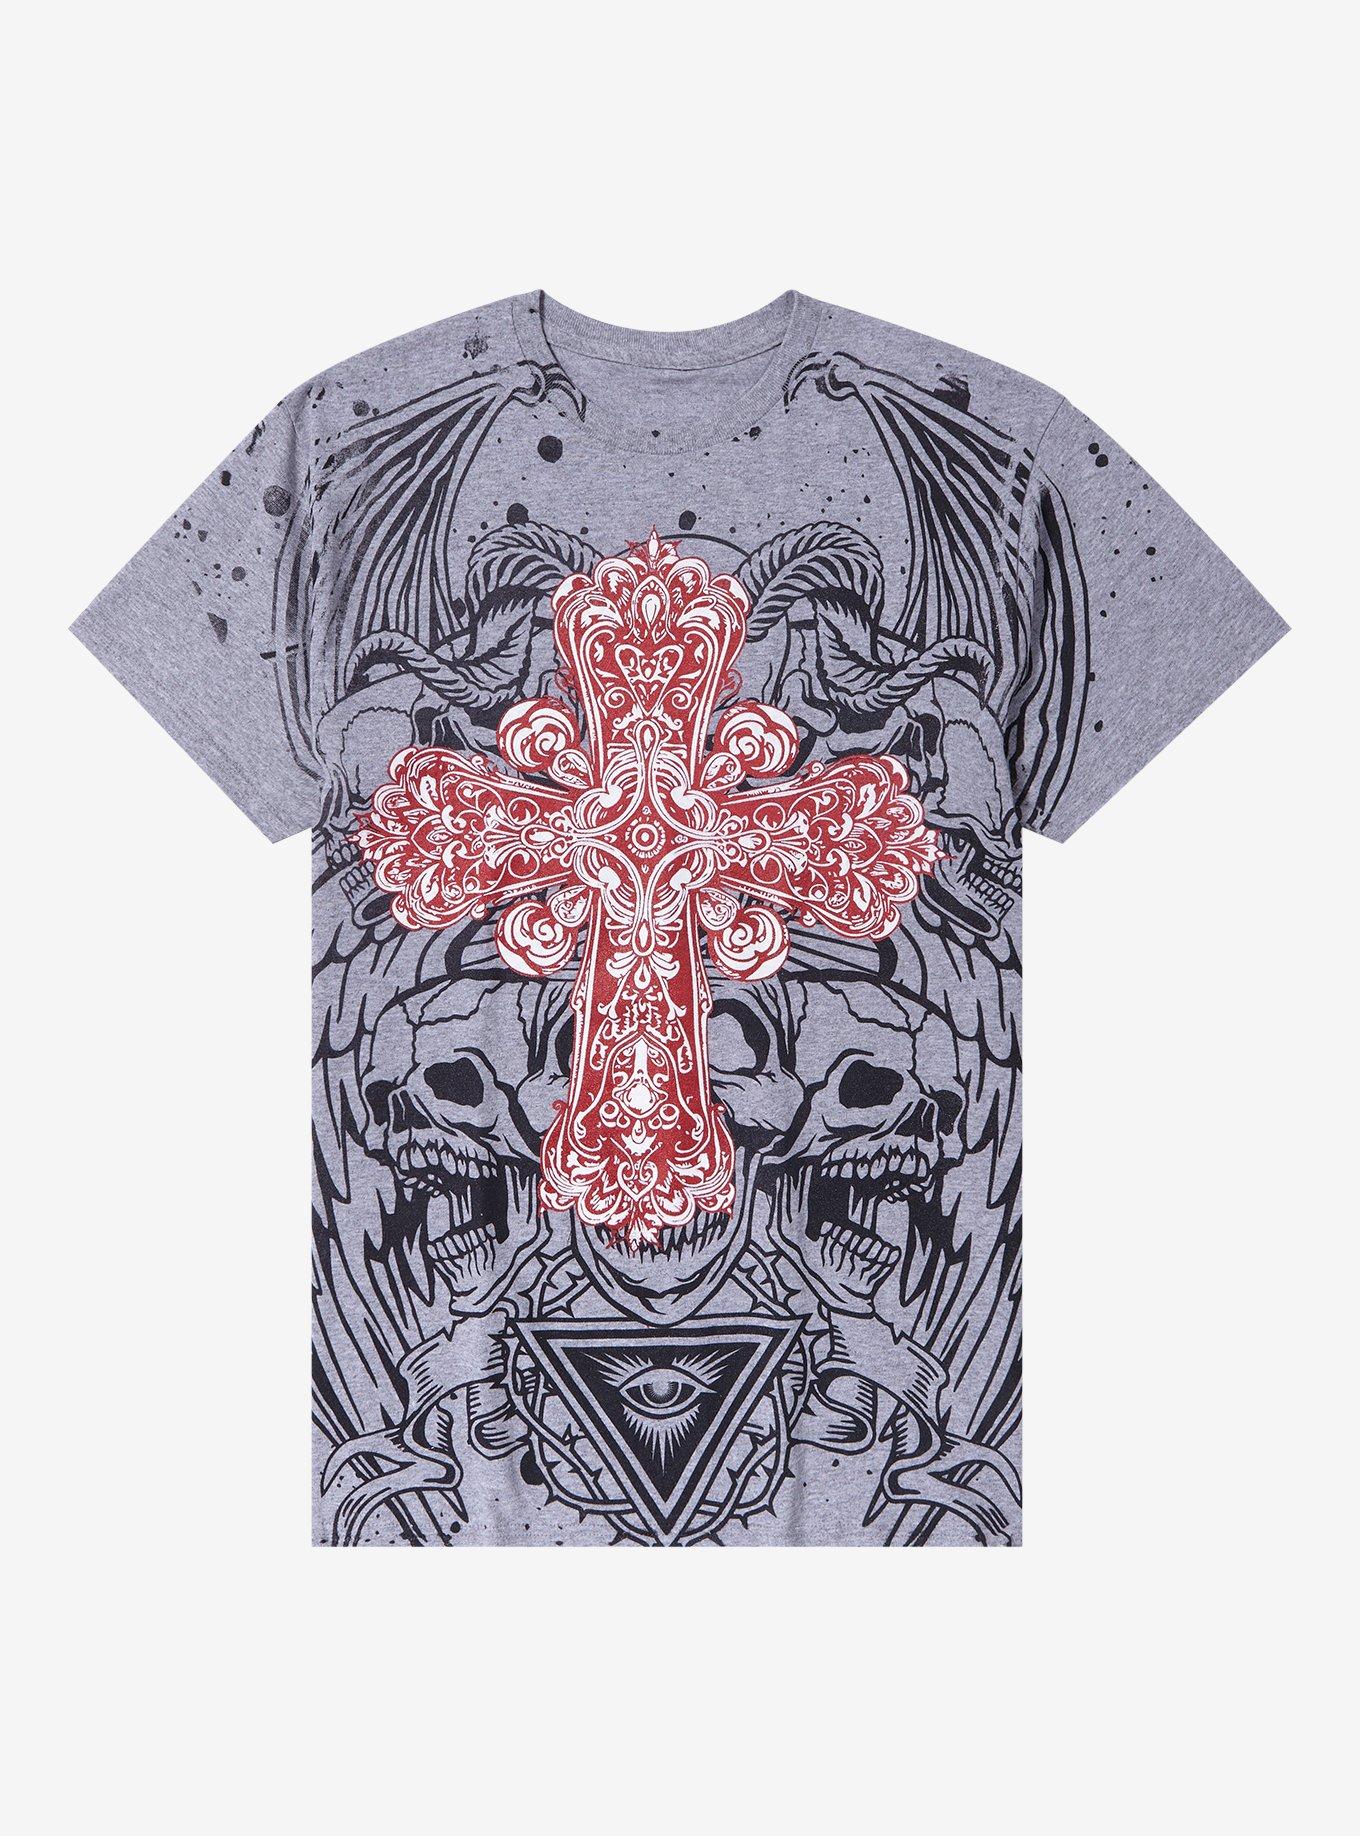 Ornate Cross Skull Demon T-Shirt